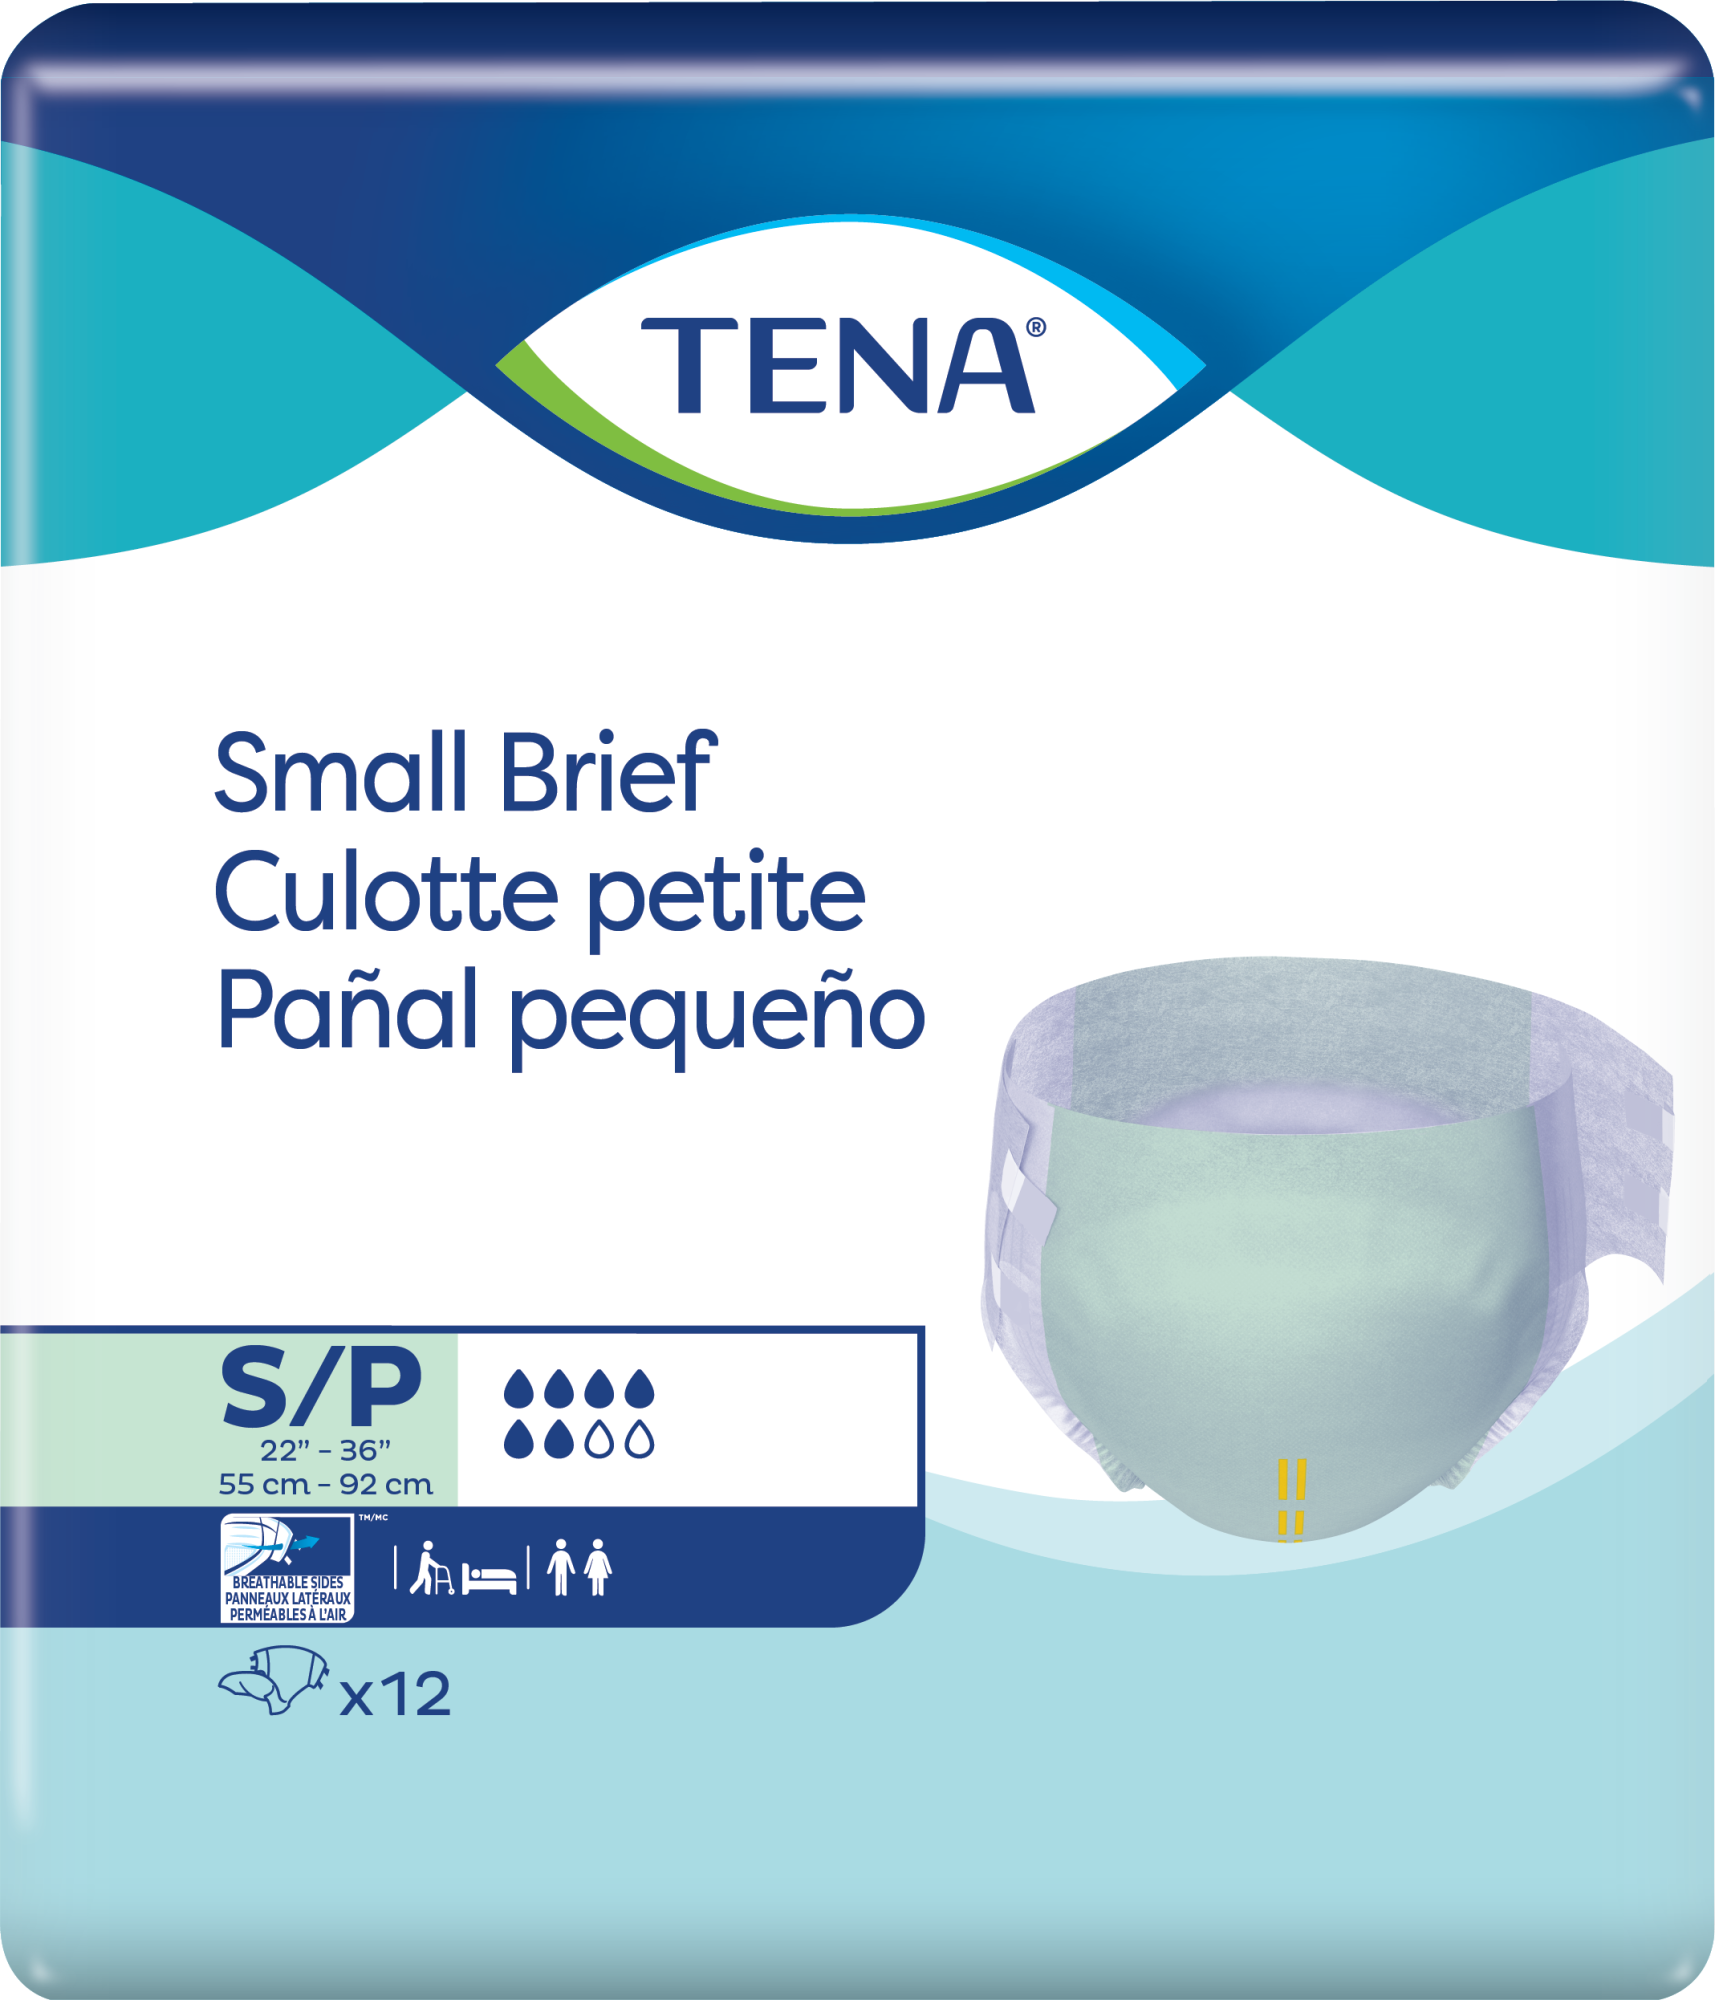 TENA PANTS PLUS CONFIOFIT L 8S  Caring Pharmacy Official Online Store